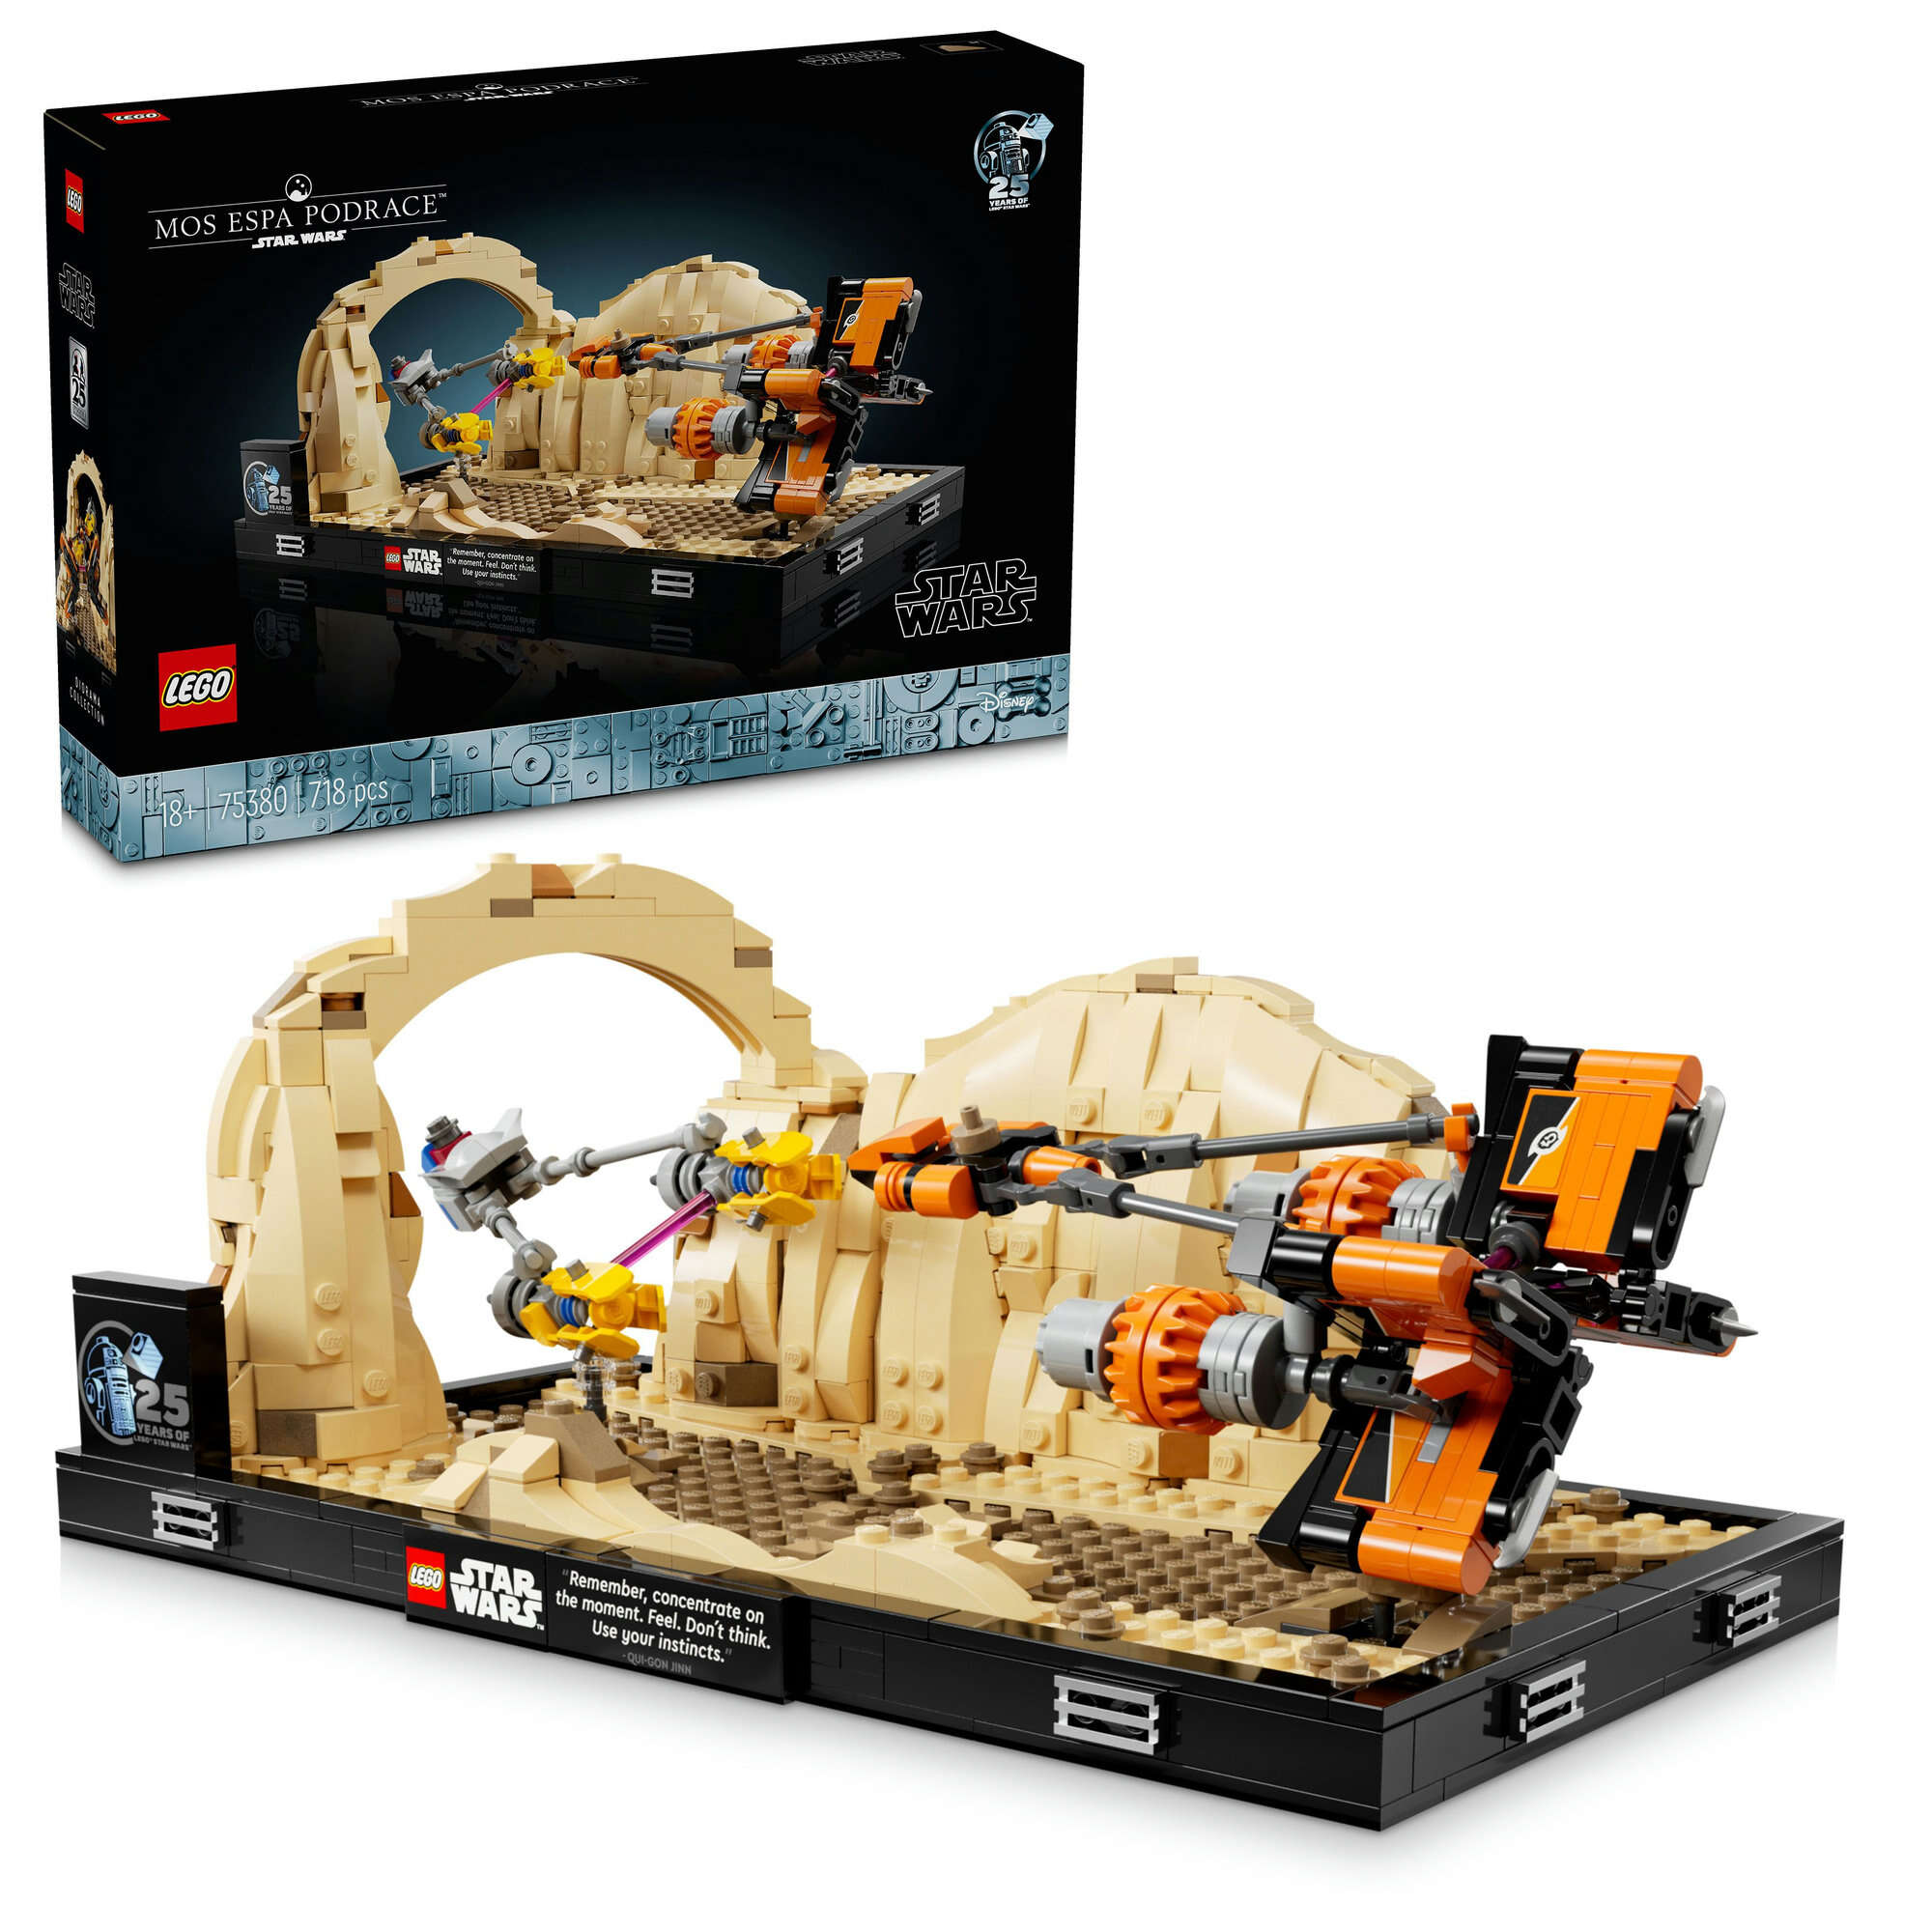 LEGO 75380 Star Wars Podrennen in Mos Espa – Diorama, Jubiläumsset